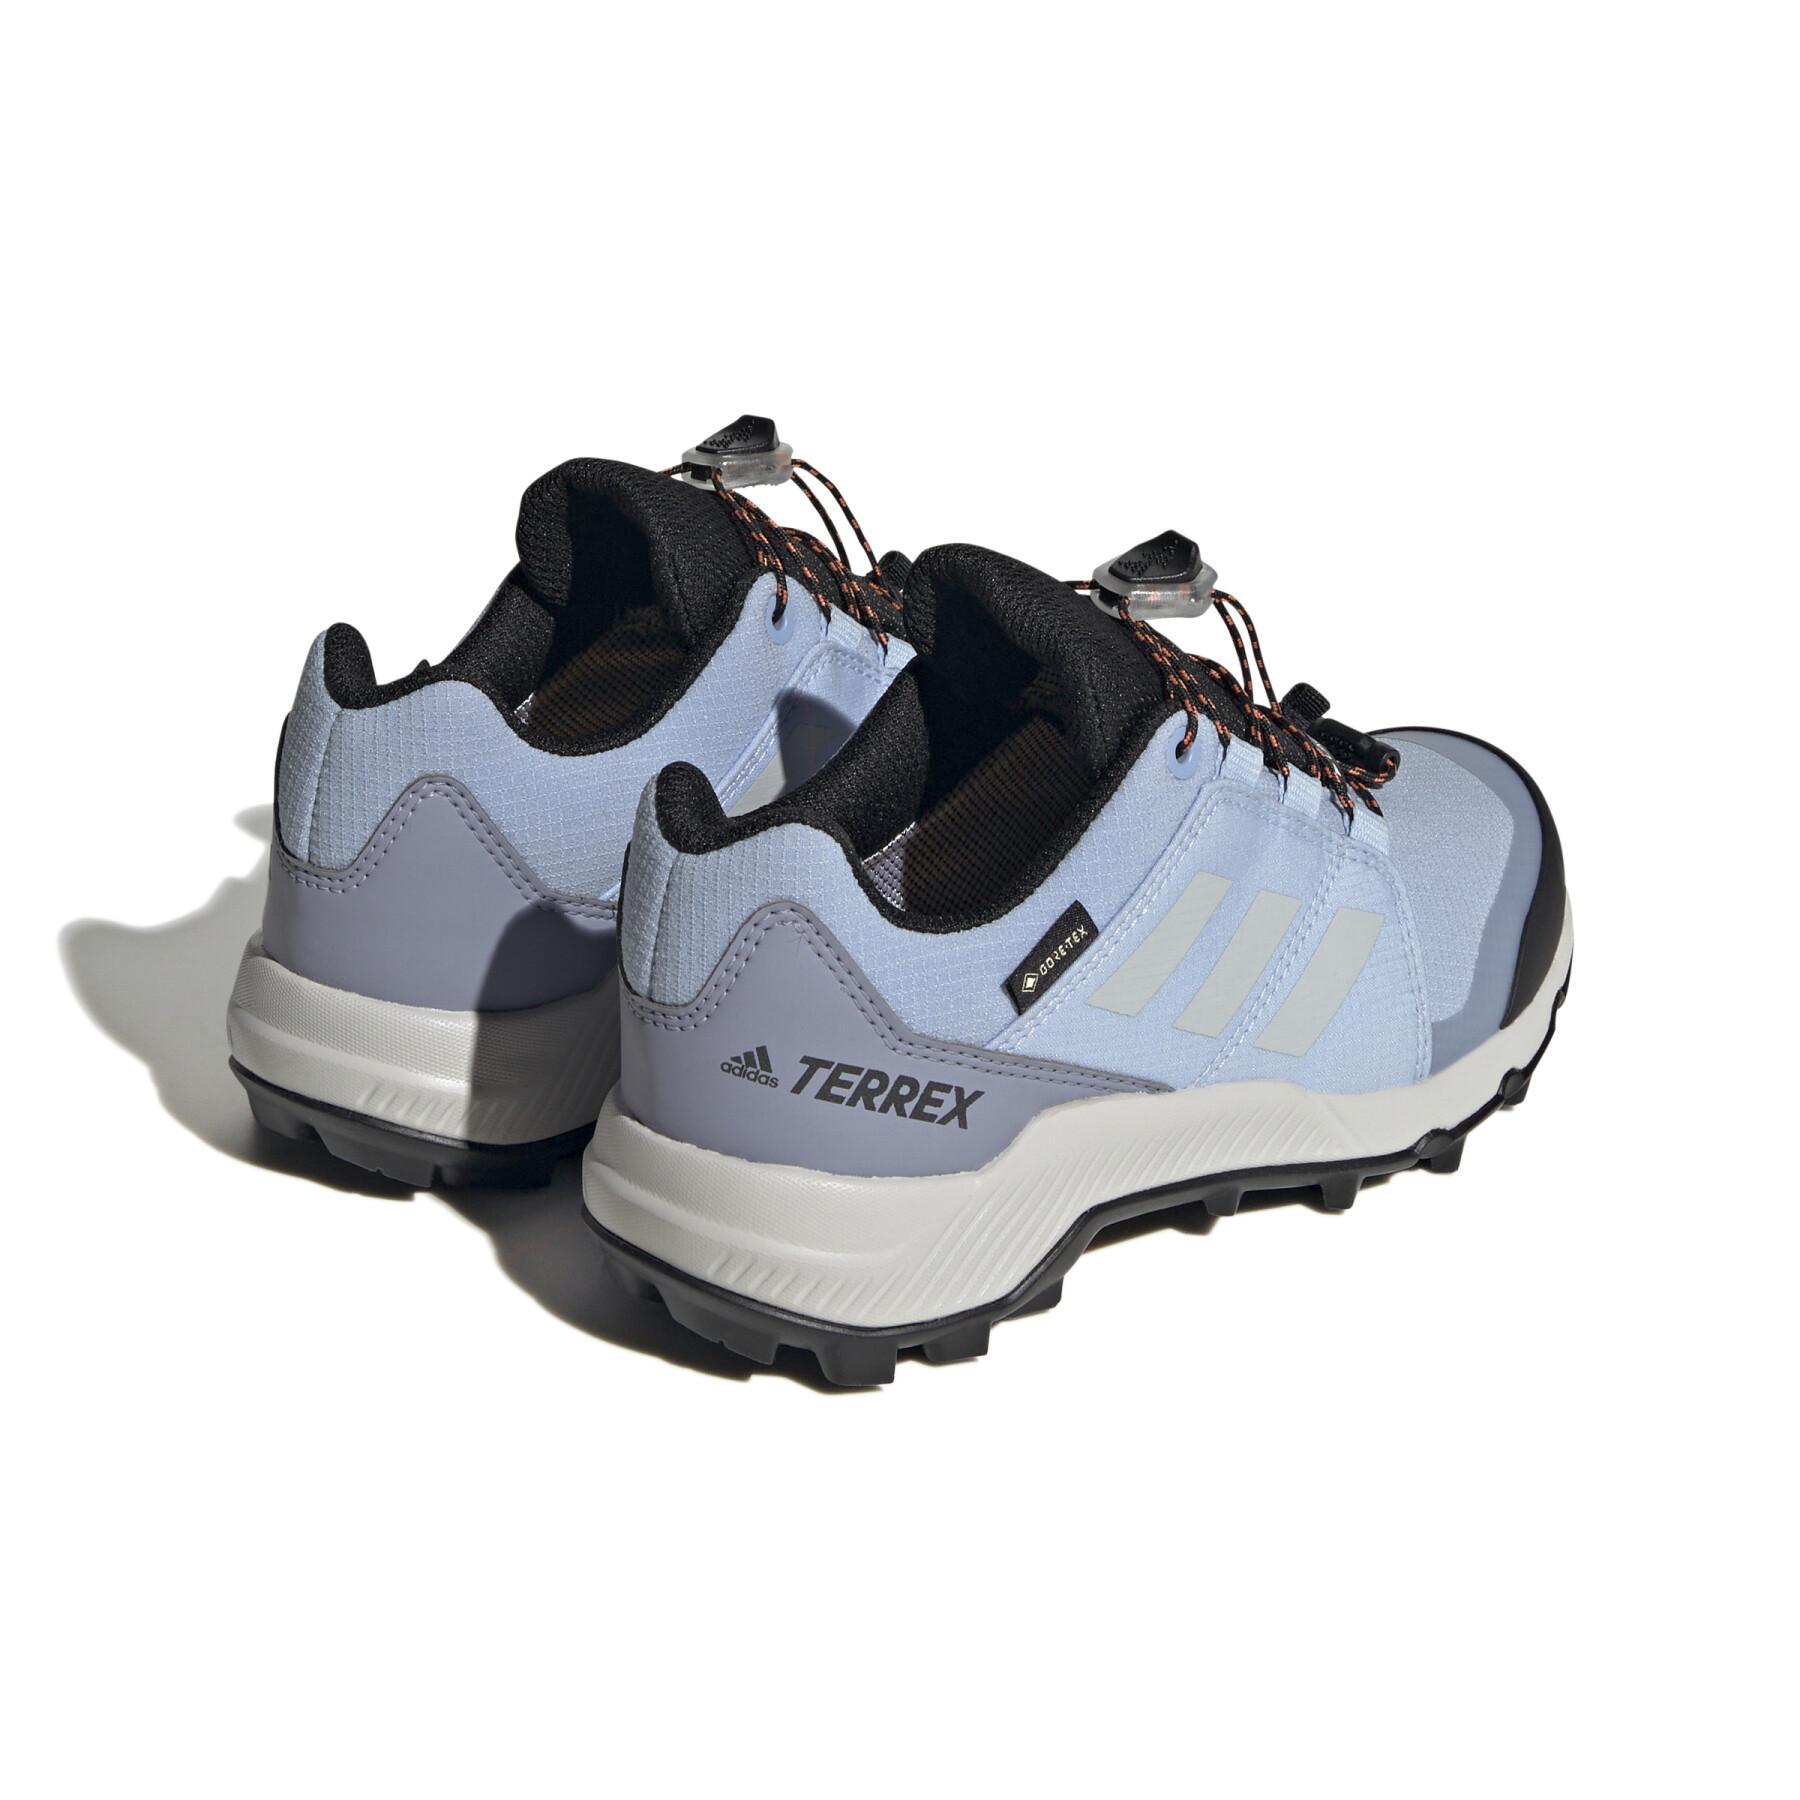 Zapatillas de senderismo para niños adidas Terrex GORE-TEX